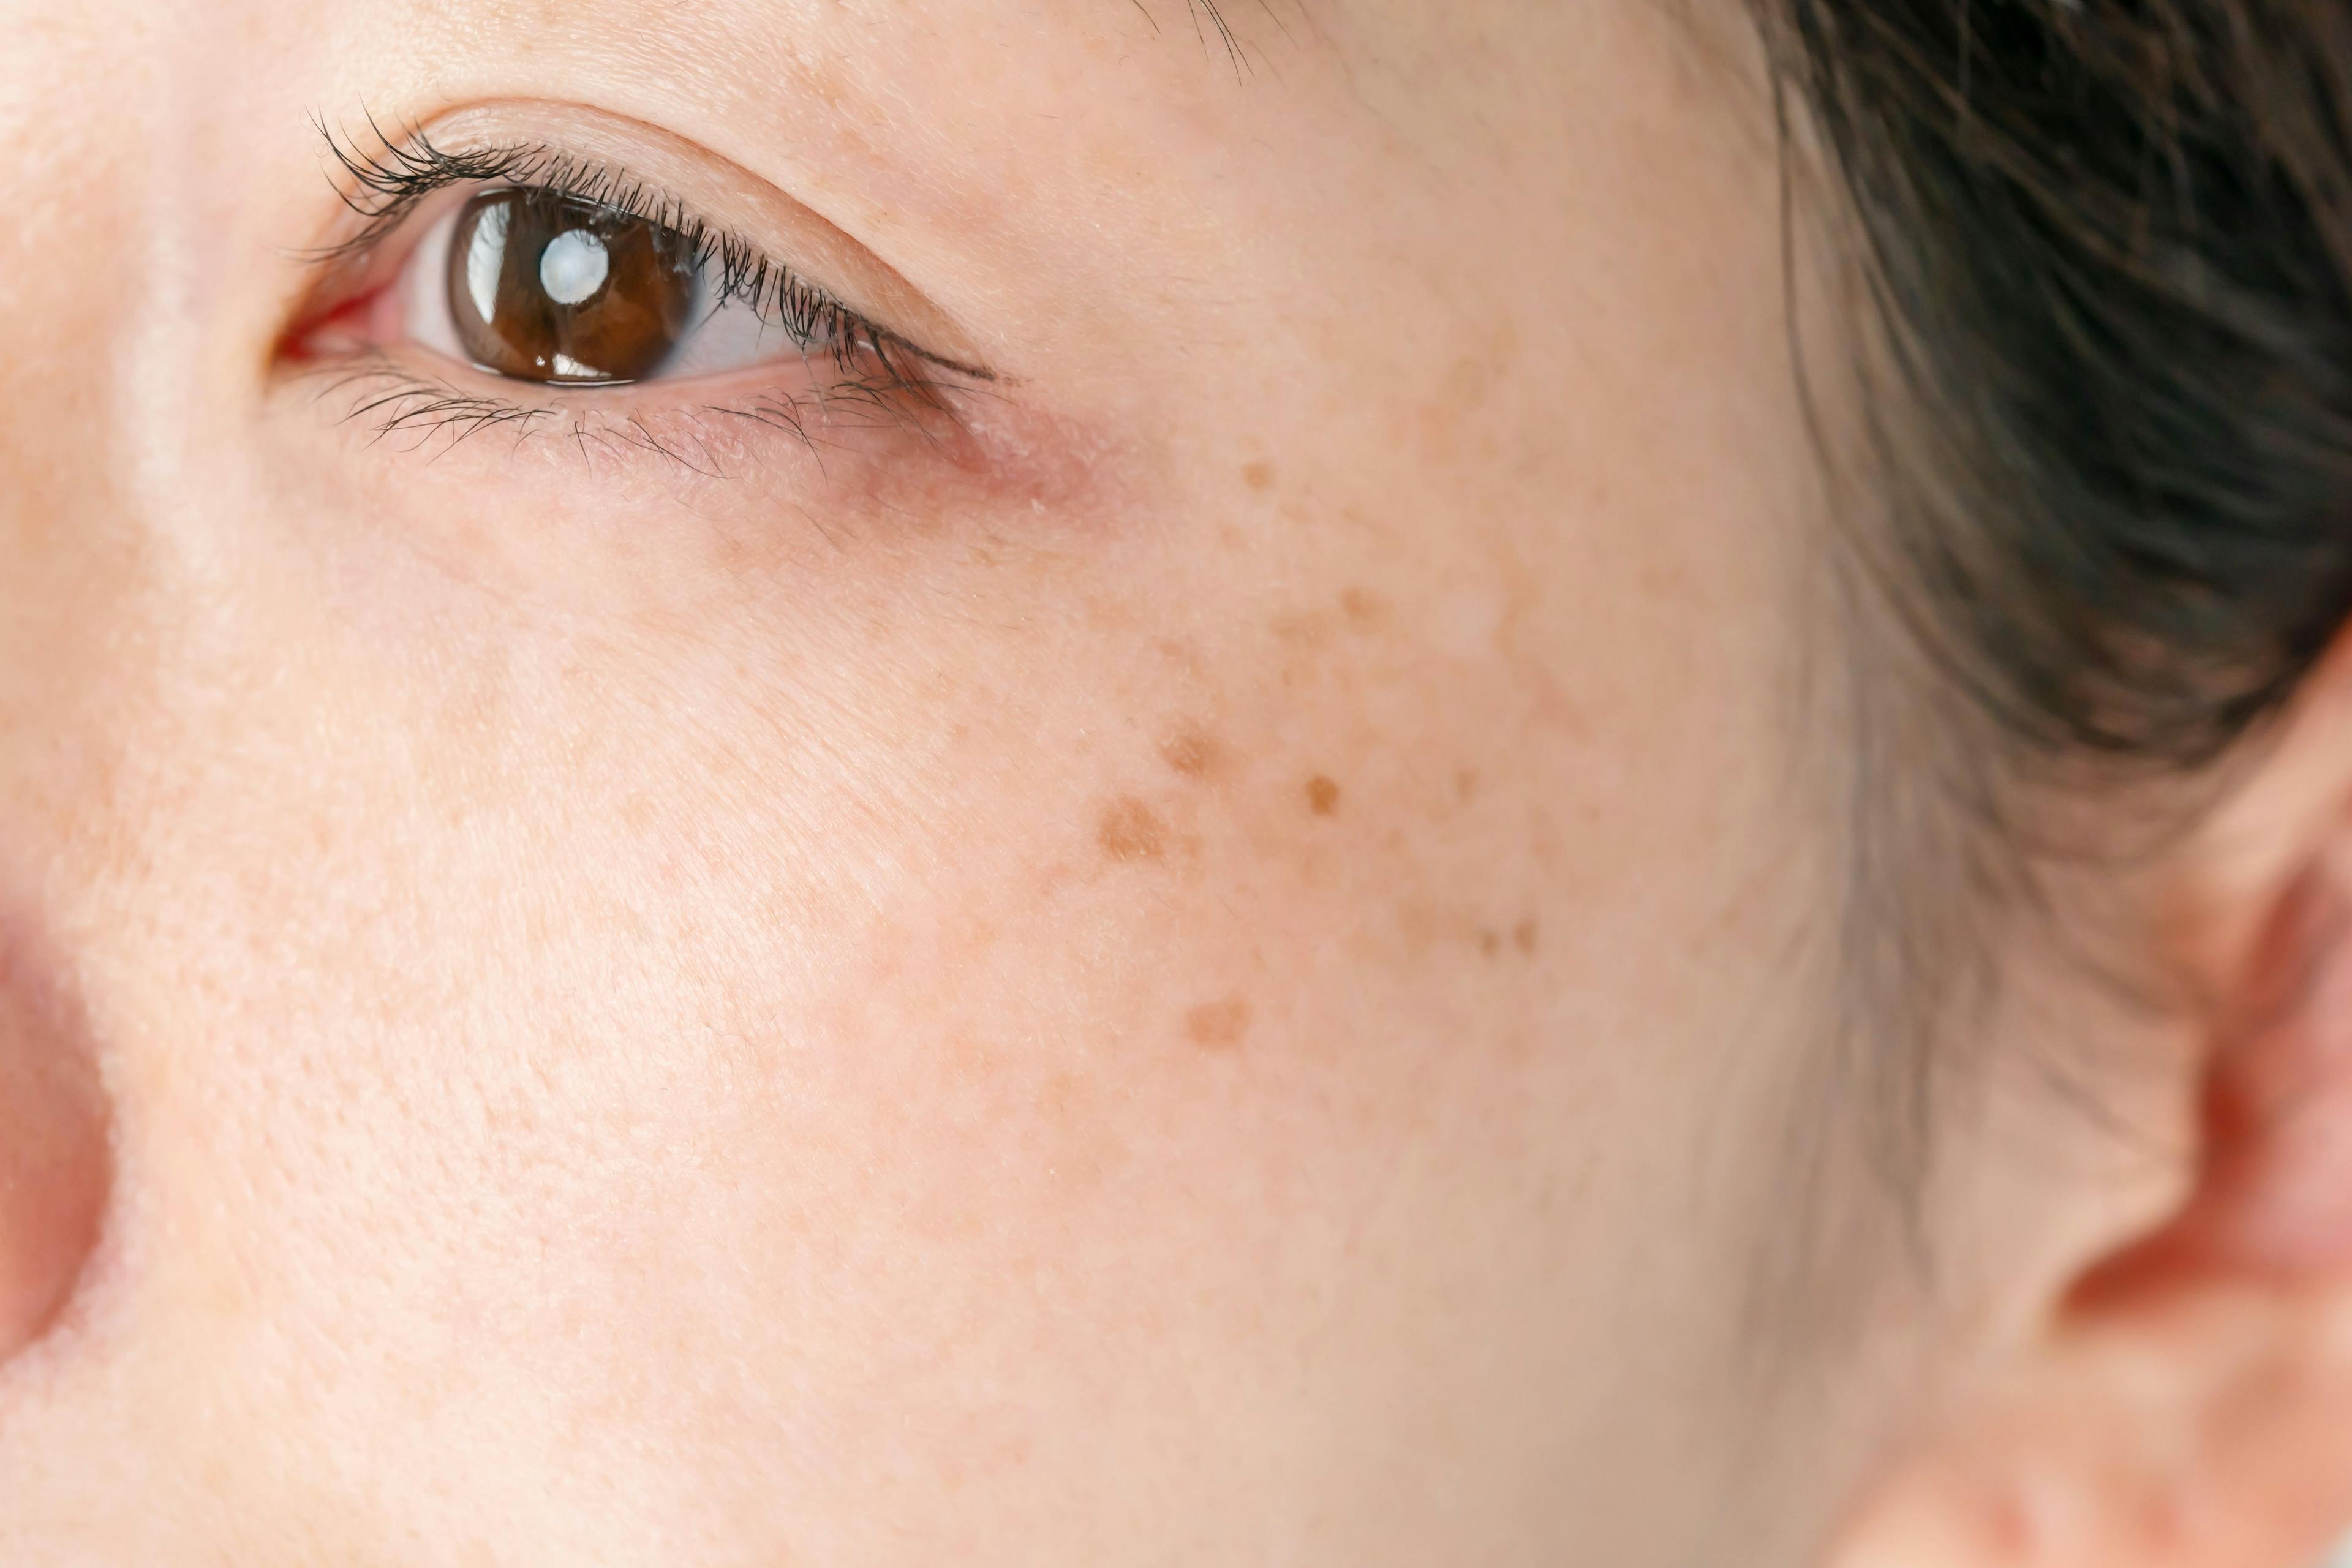 Melasma/freckling on a woman's cheek